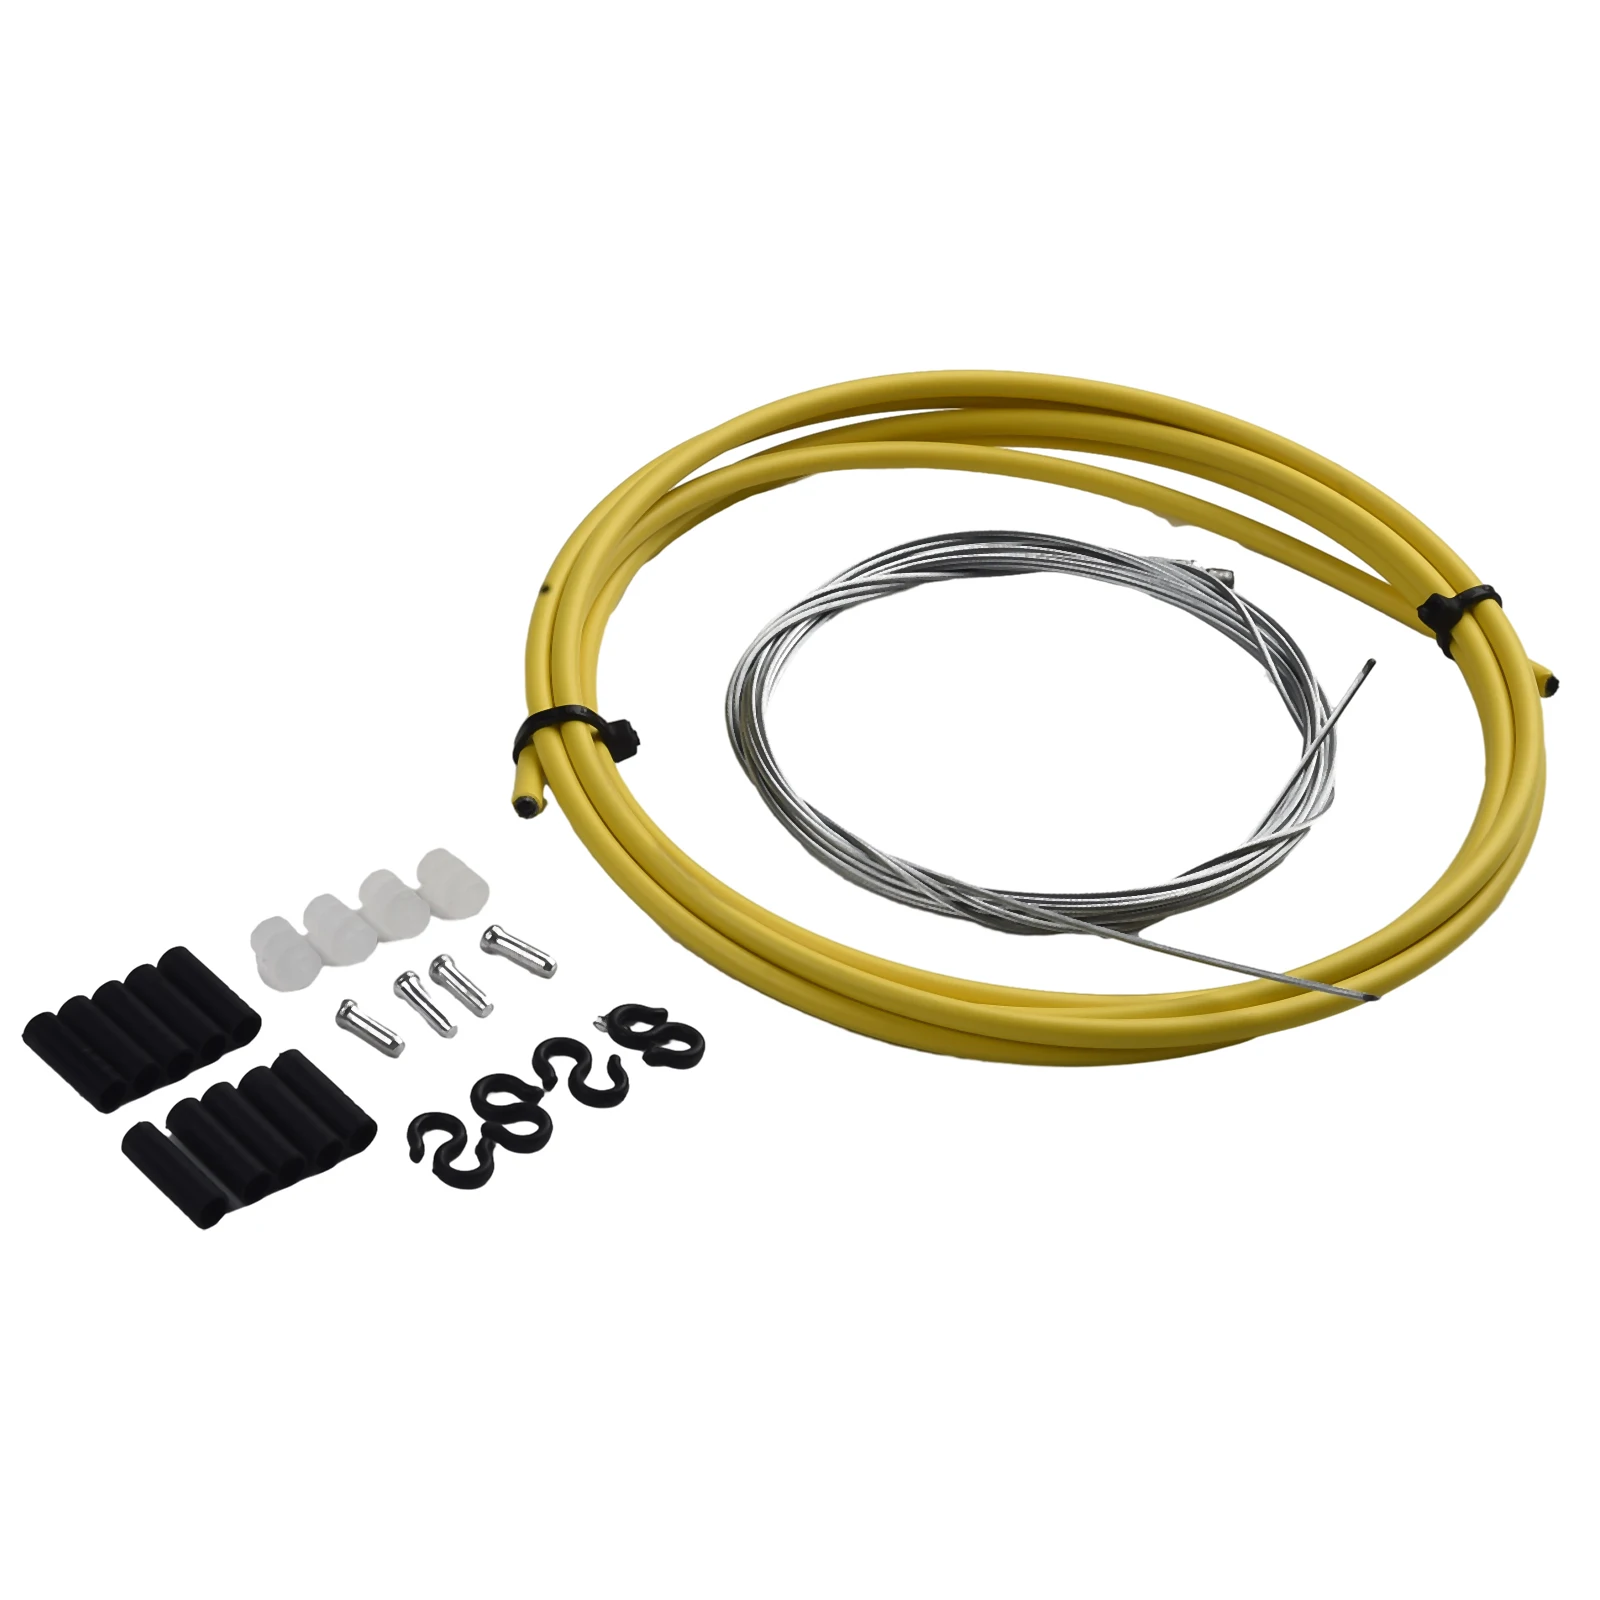 Ersatz kabel für Rohrs chalt kabel mit Kabels chnalle Fahrrad zubehör Fahrradumwerfer-Schalthebel 2-Draht-Kernschnalle